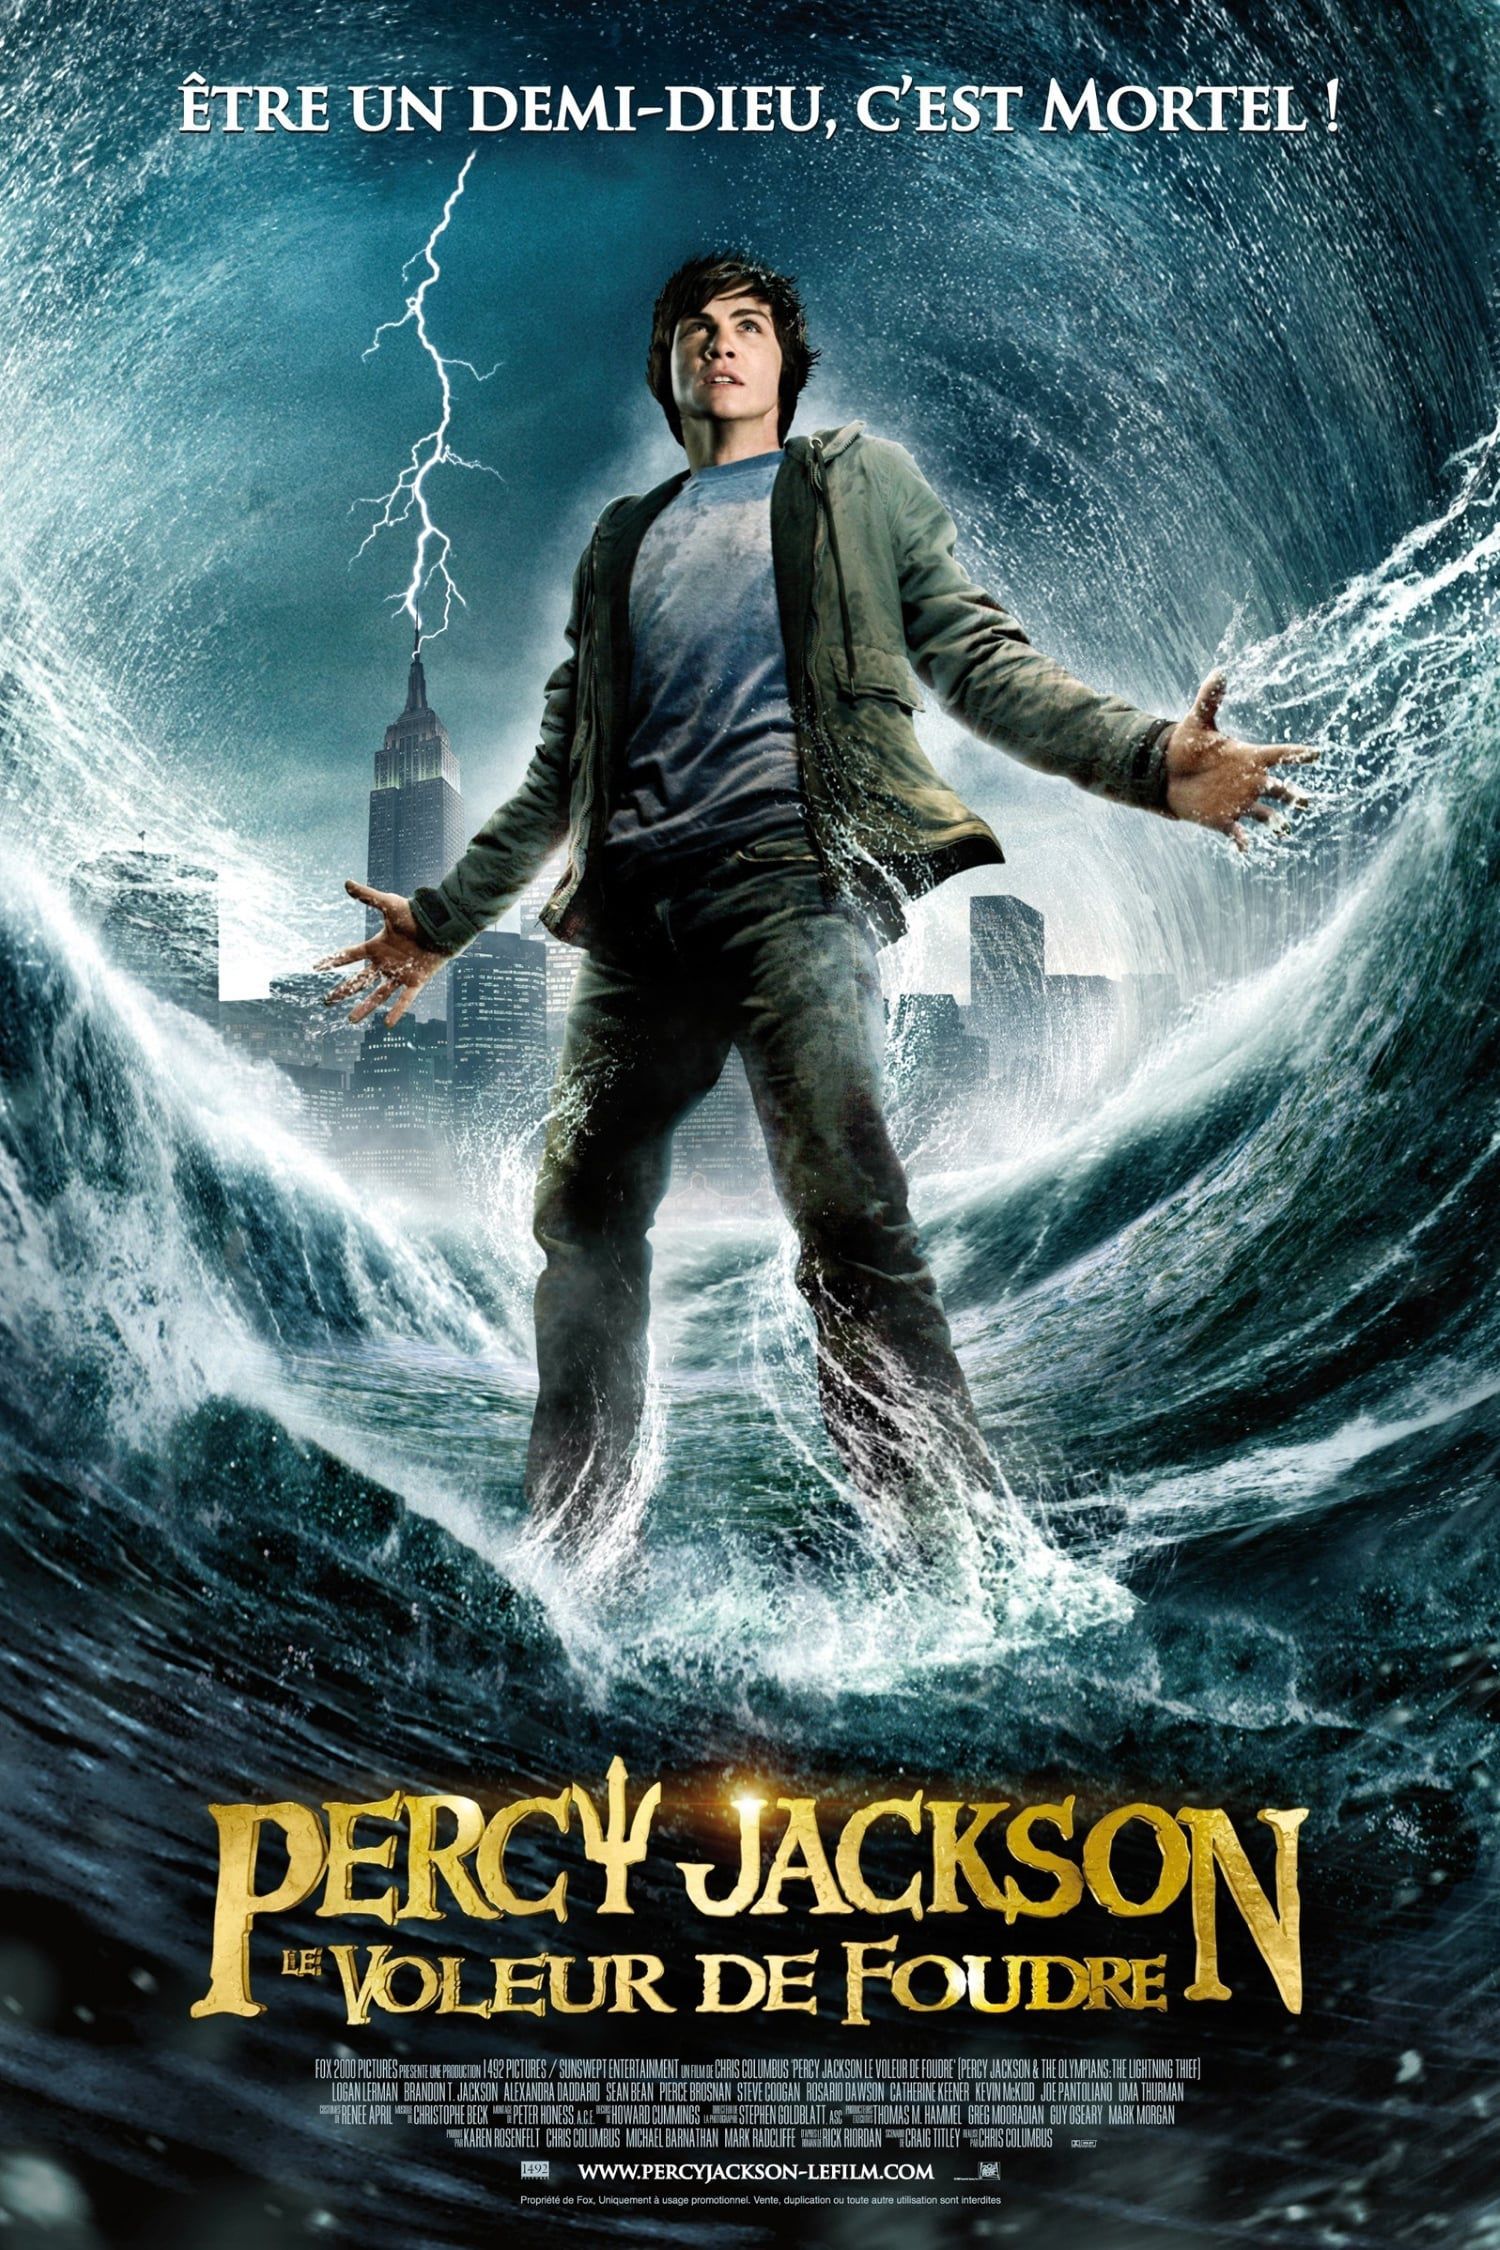 Percy Jackson : Le Voleur de foudre - Film (2010) streaming VF gratuit complet